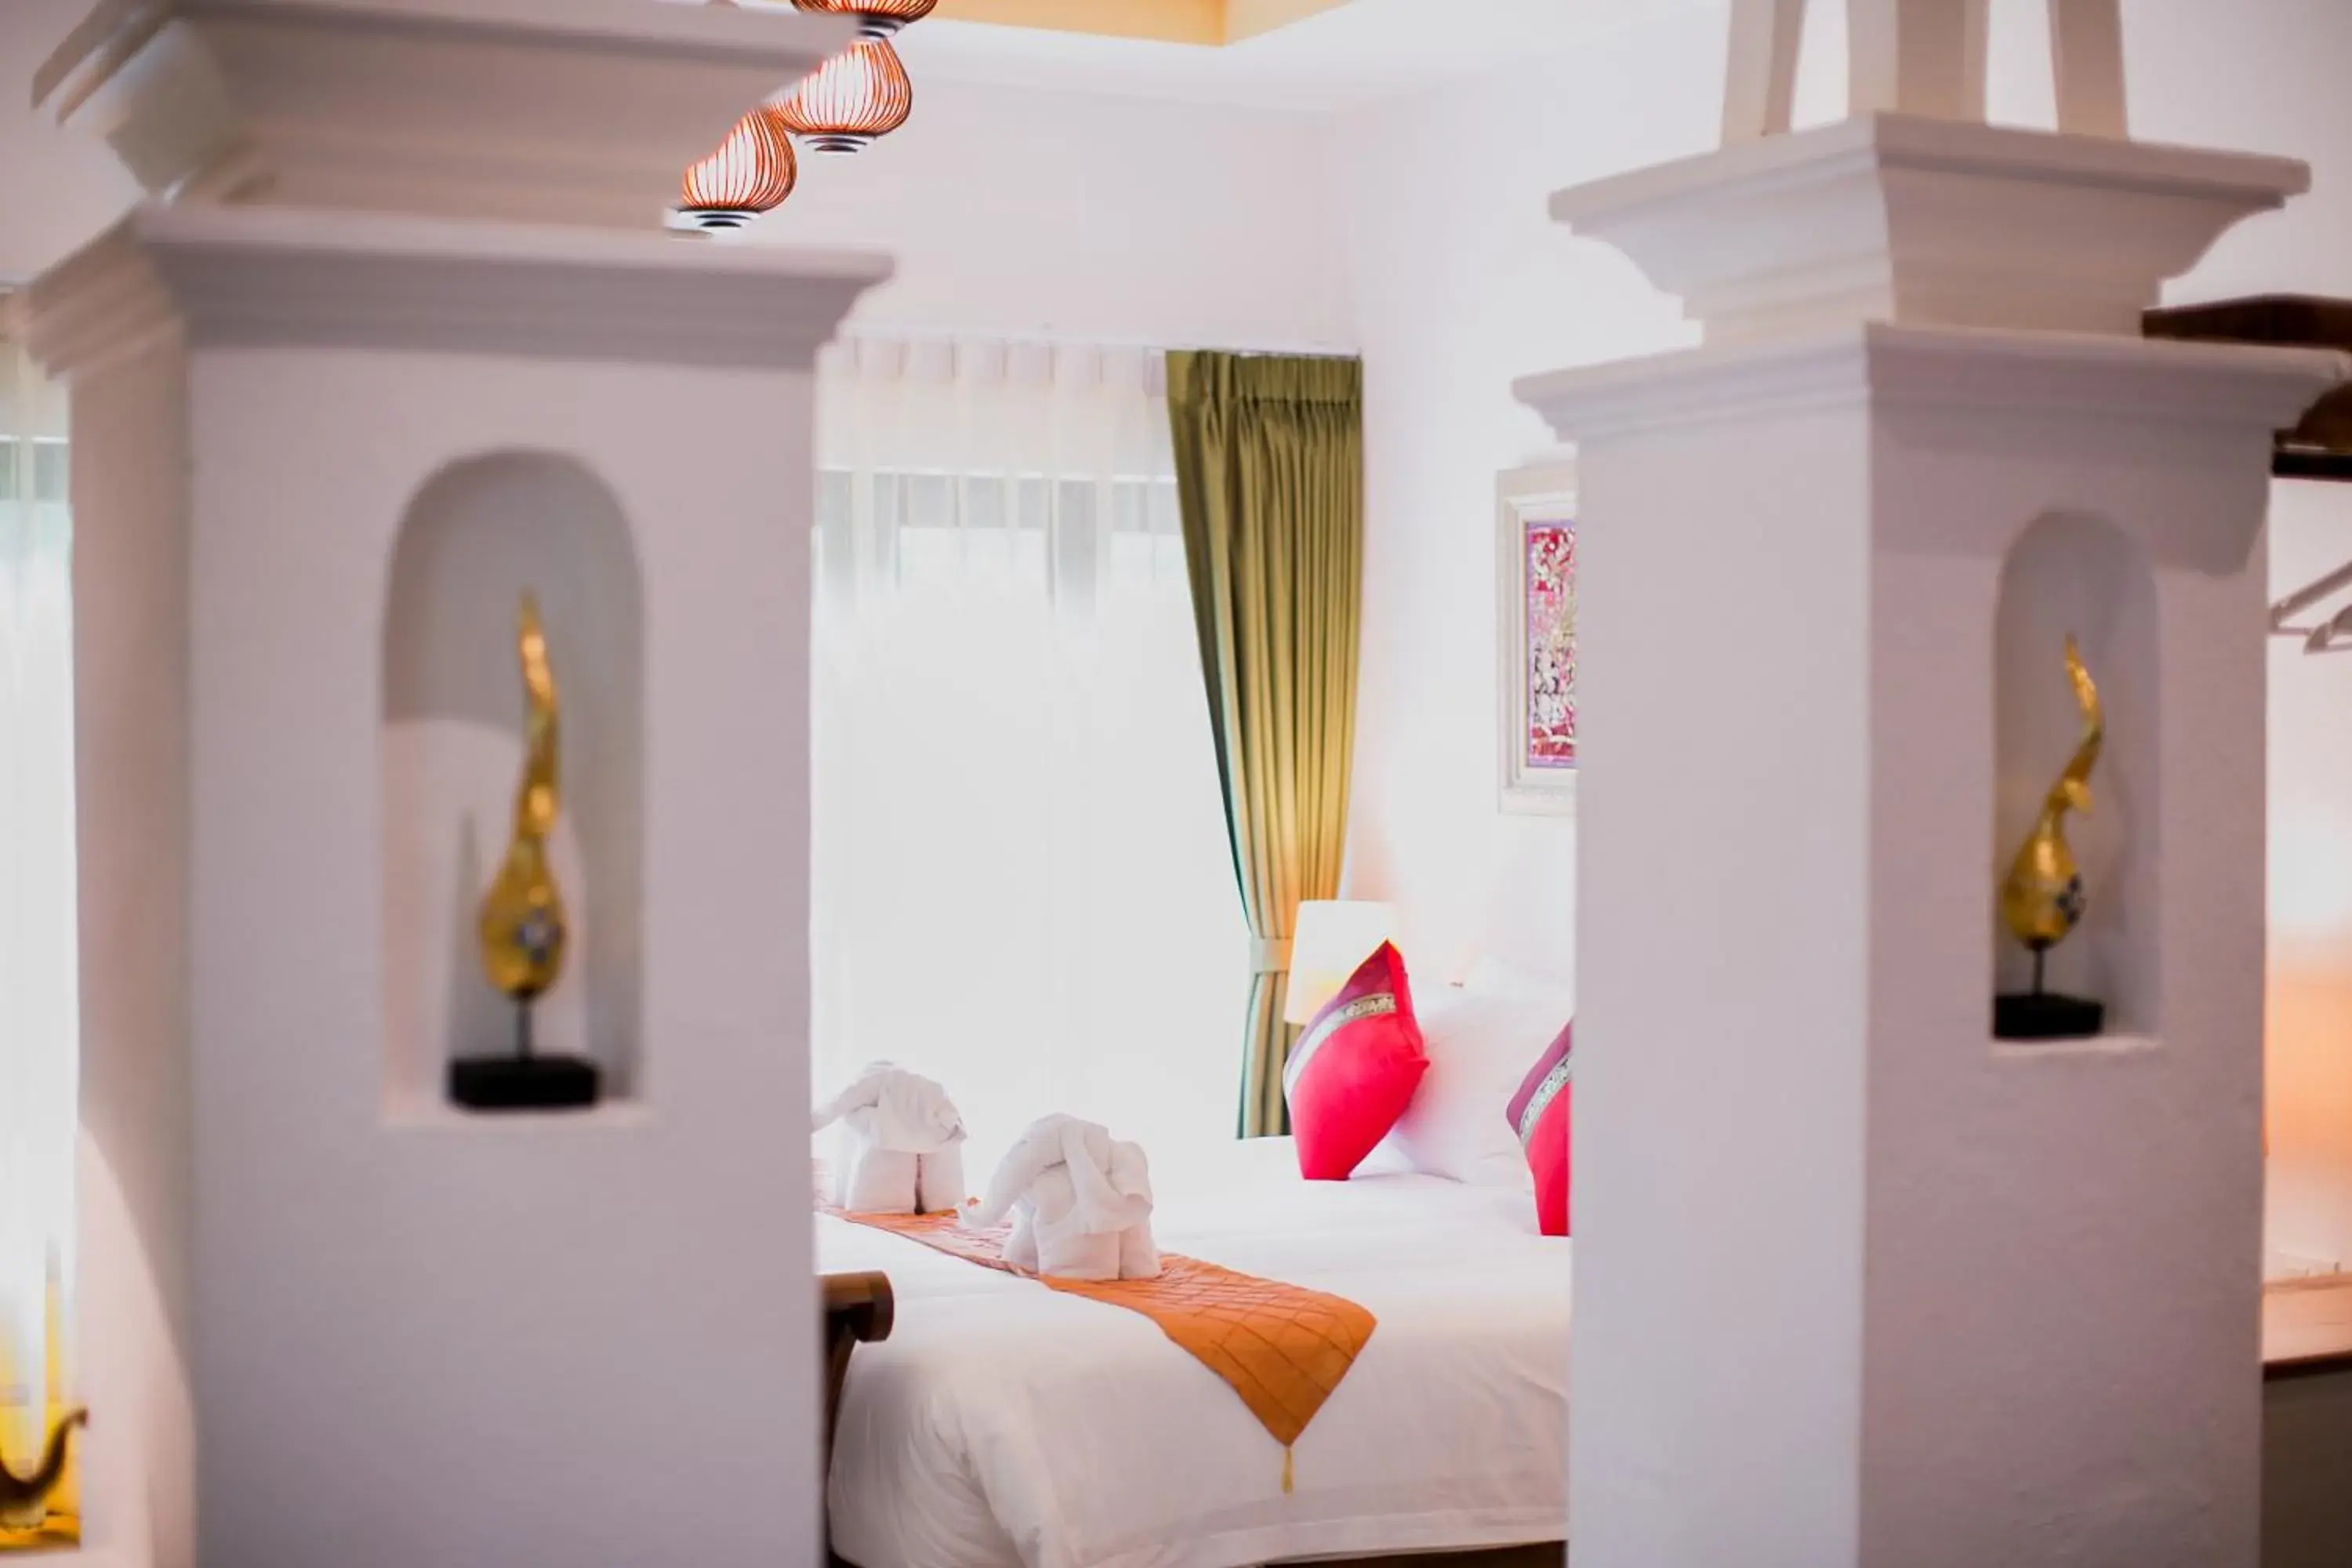 Bed in E-outfitting Doikham Resort